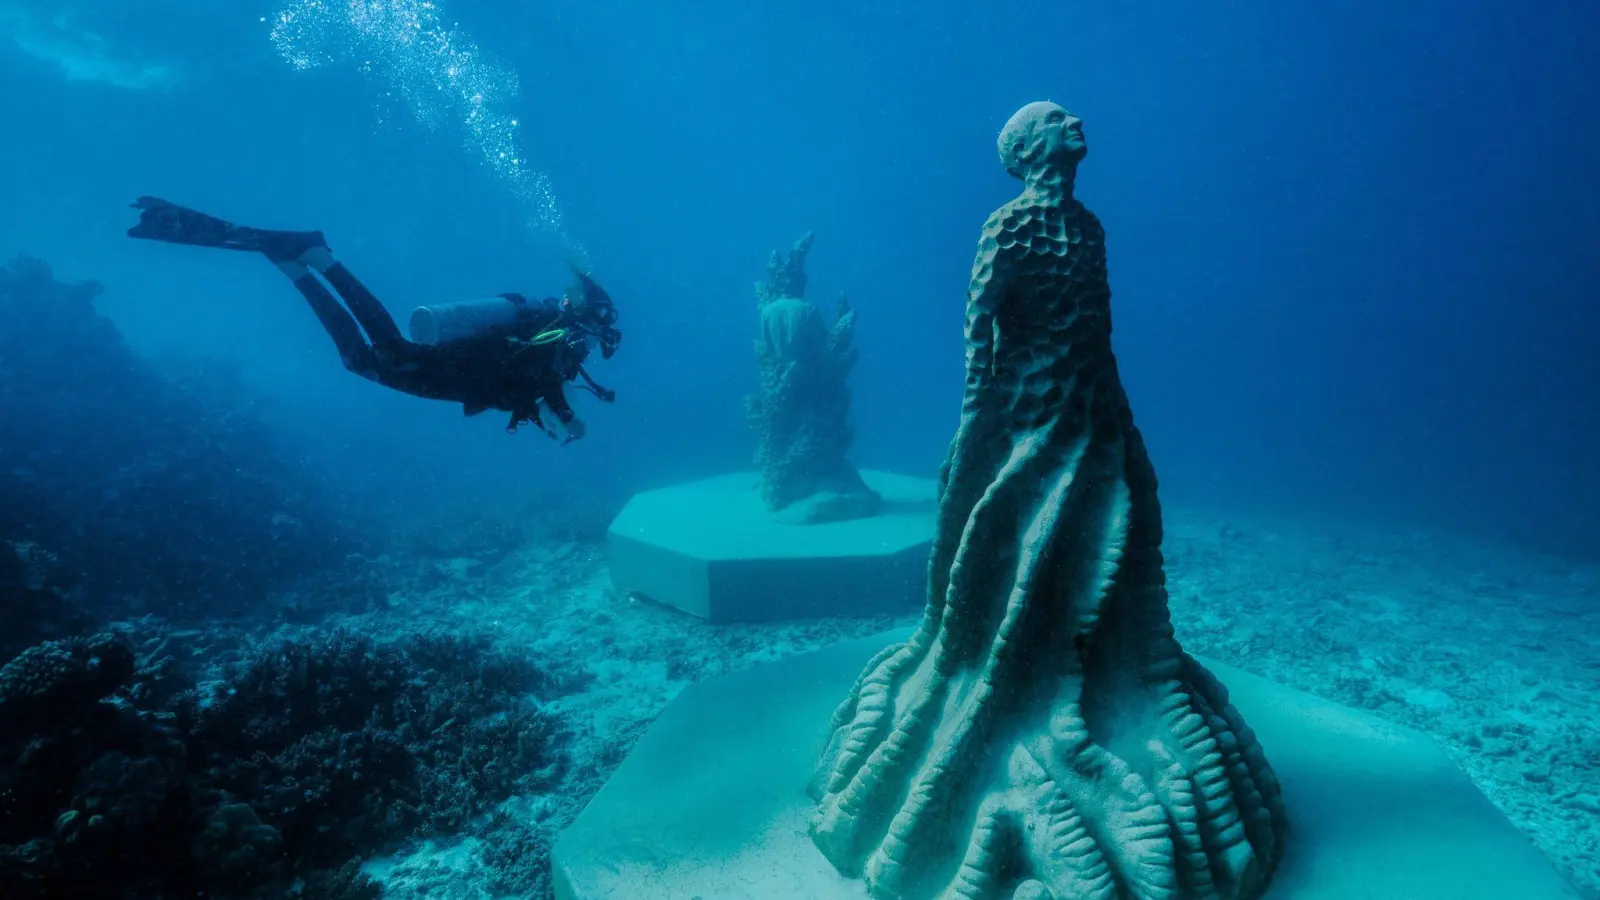 Die neuen Skulpturen des Künstlers Jason deCaires Taylor wurden im Mai unter Wasser aufgestellt - nun wurde die Ausstellung „Ocean Sentinels“ offiziell eröffnet, sodass Urlauber zu ihnen abtauchen können. (Foto: Jason-deCaires-Taylor/TEQ/dpa-tmn)